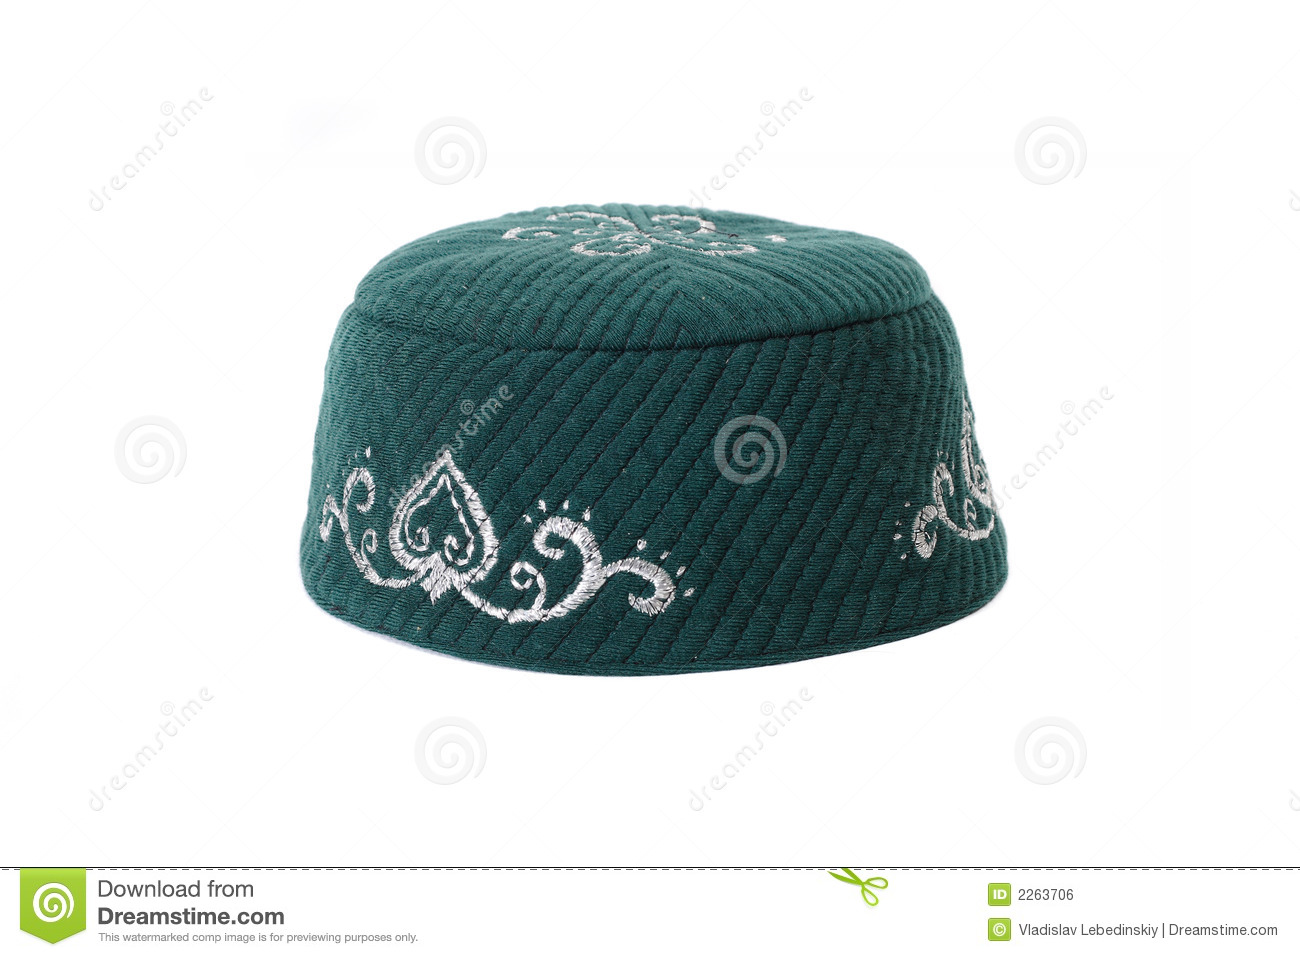 Comment s'appelle le petit chapeau des musulmans ?